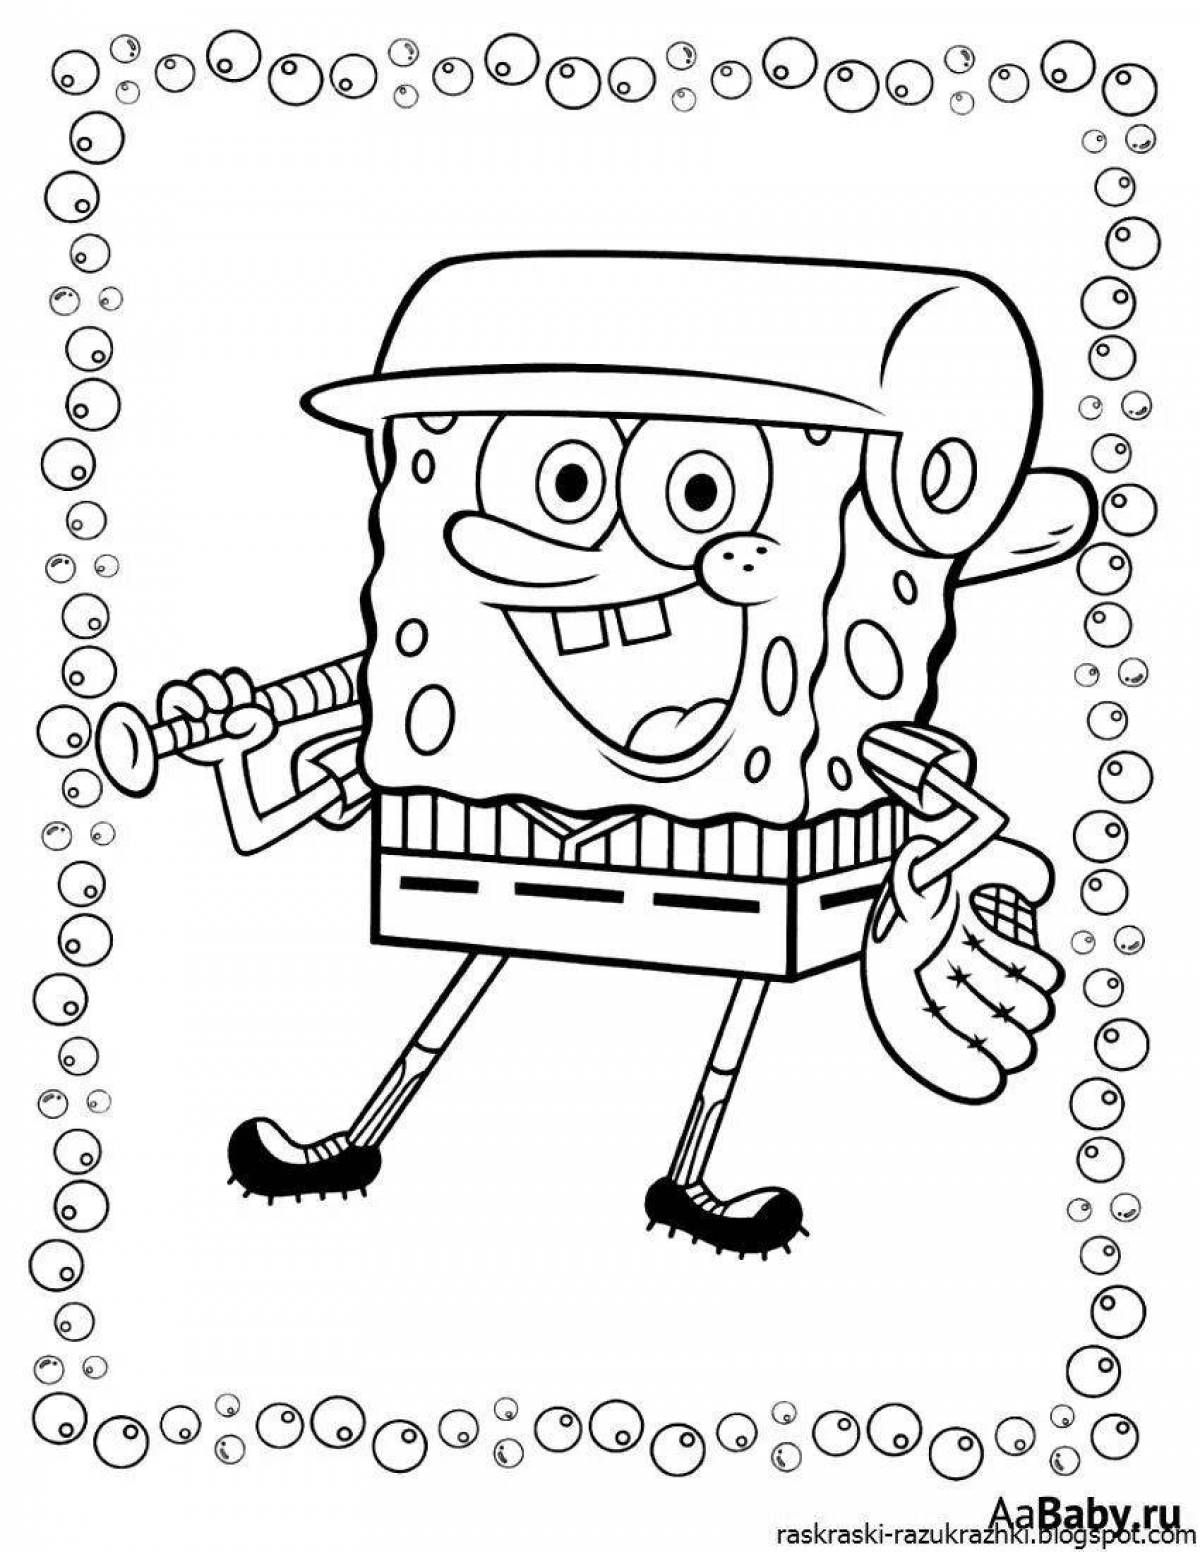 Fun game spongebob coloring